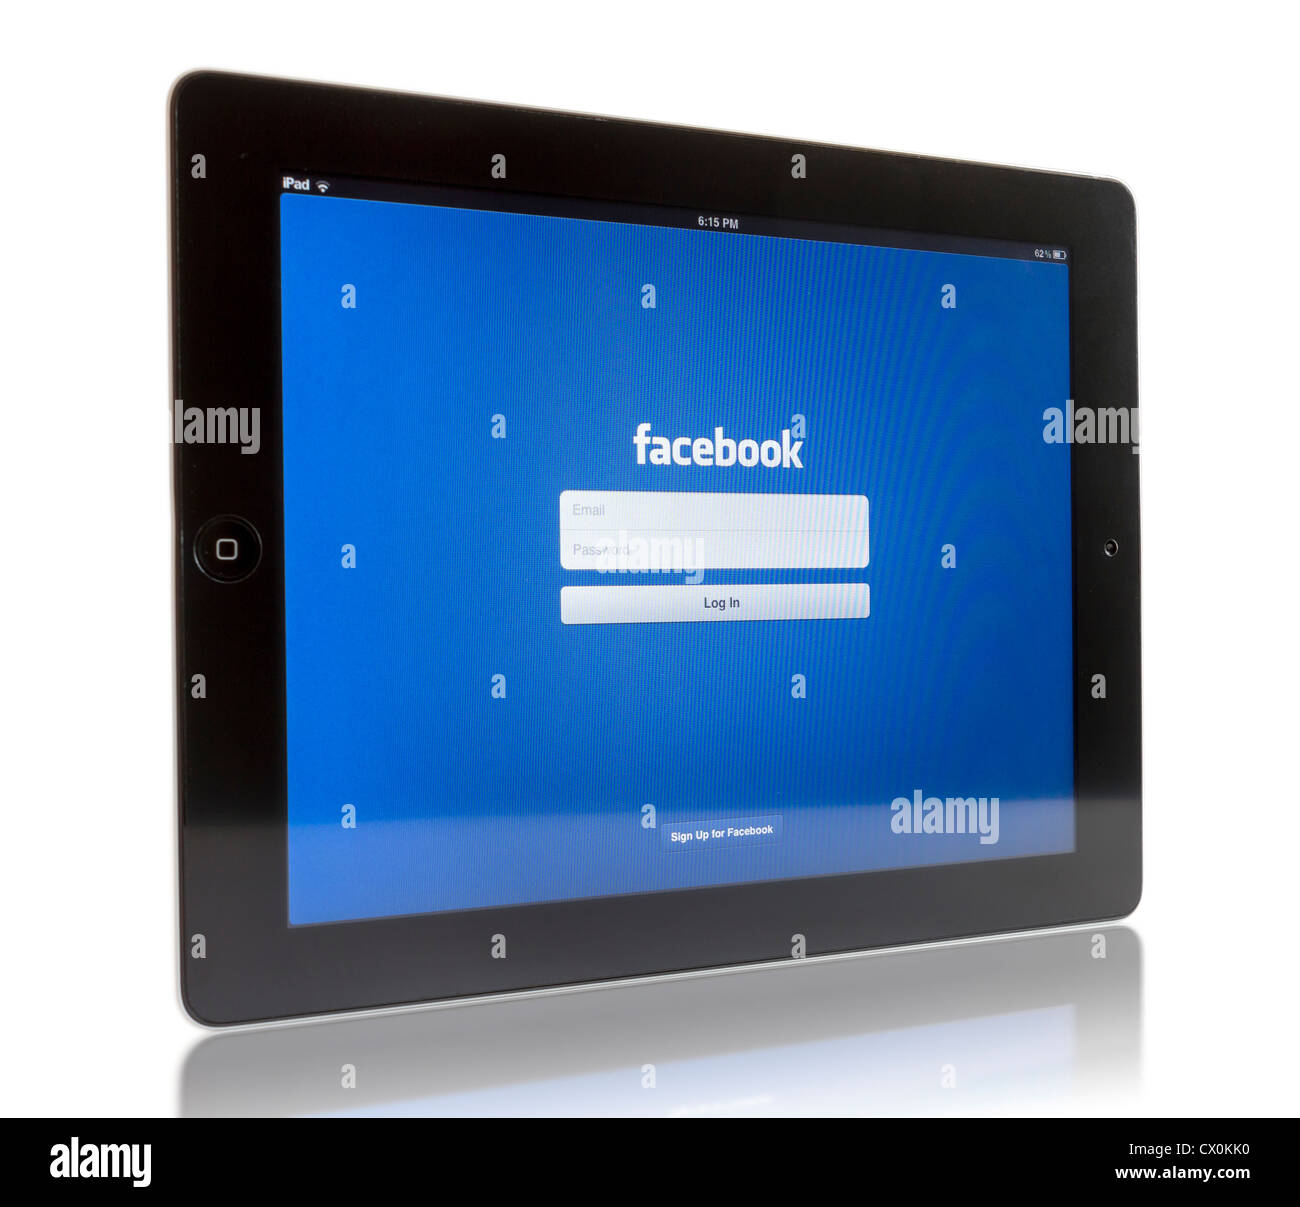 Die neue iPad3 anzeigen Login-Bildschirm von Facebook-Anwendung. Stockfoto